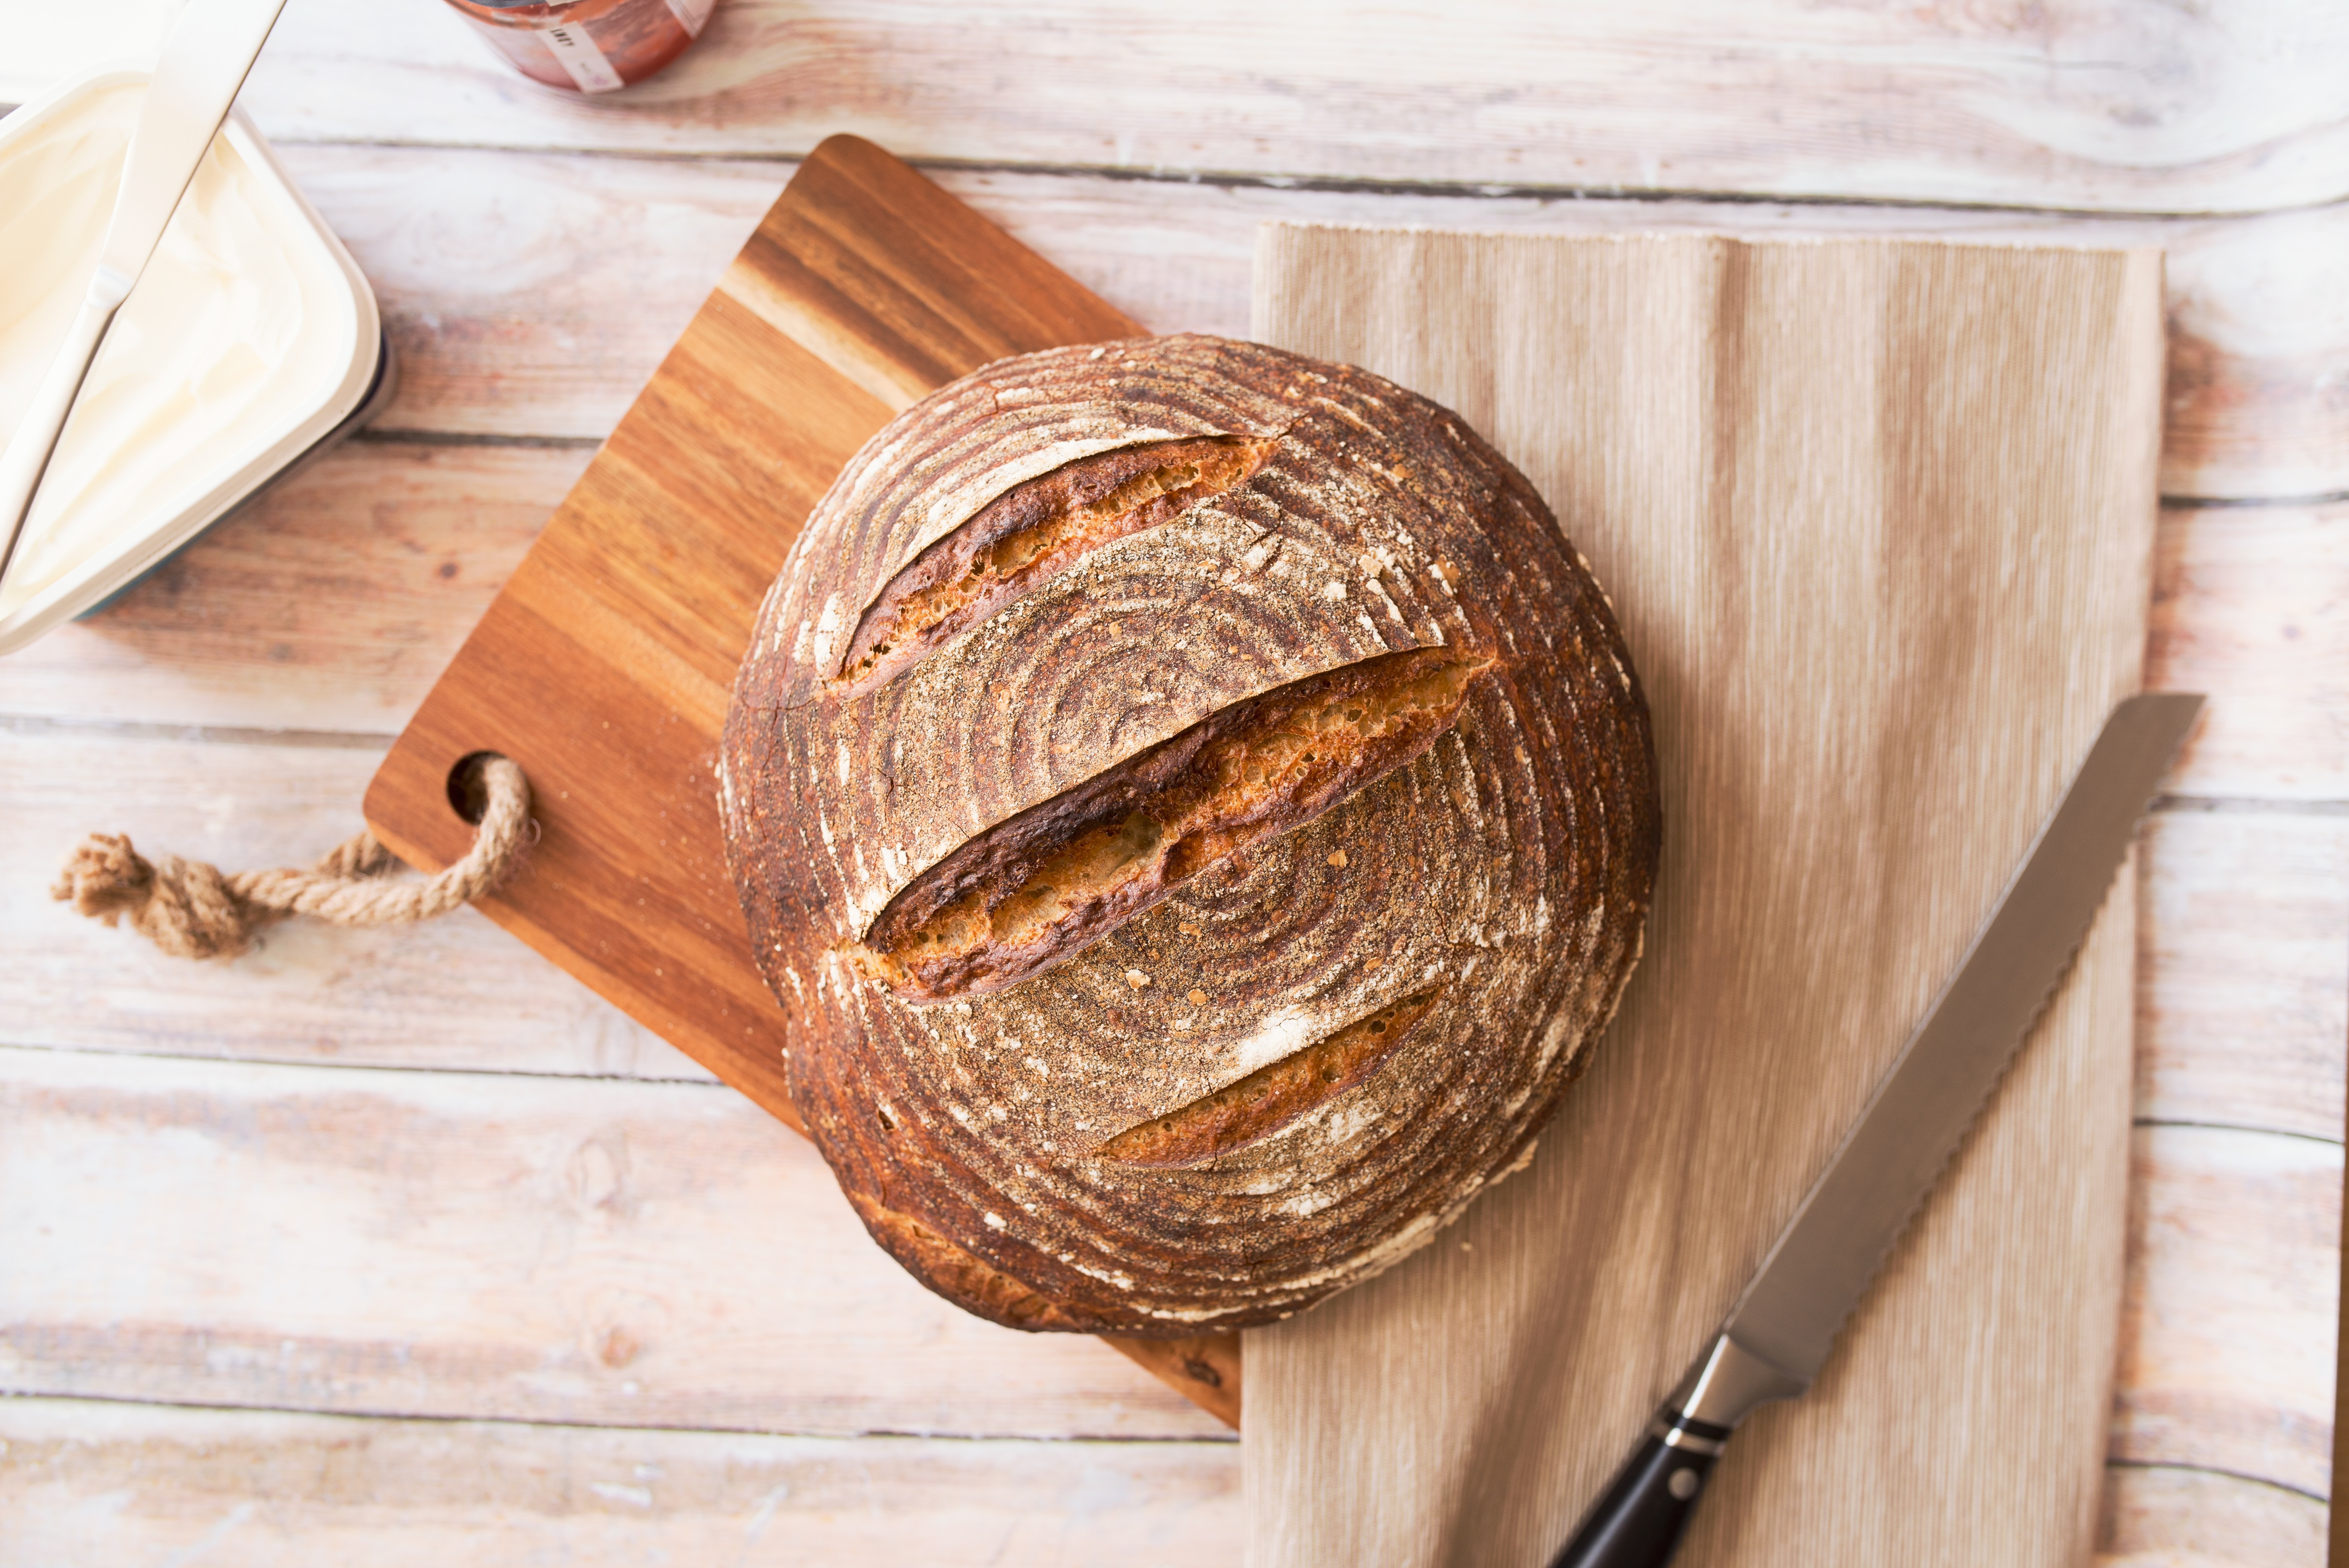 A sourdough loaf of bread on a cutting board.